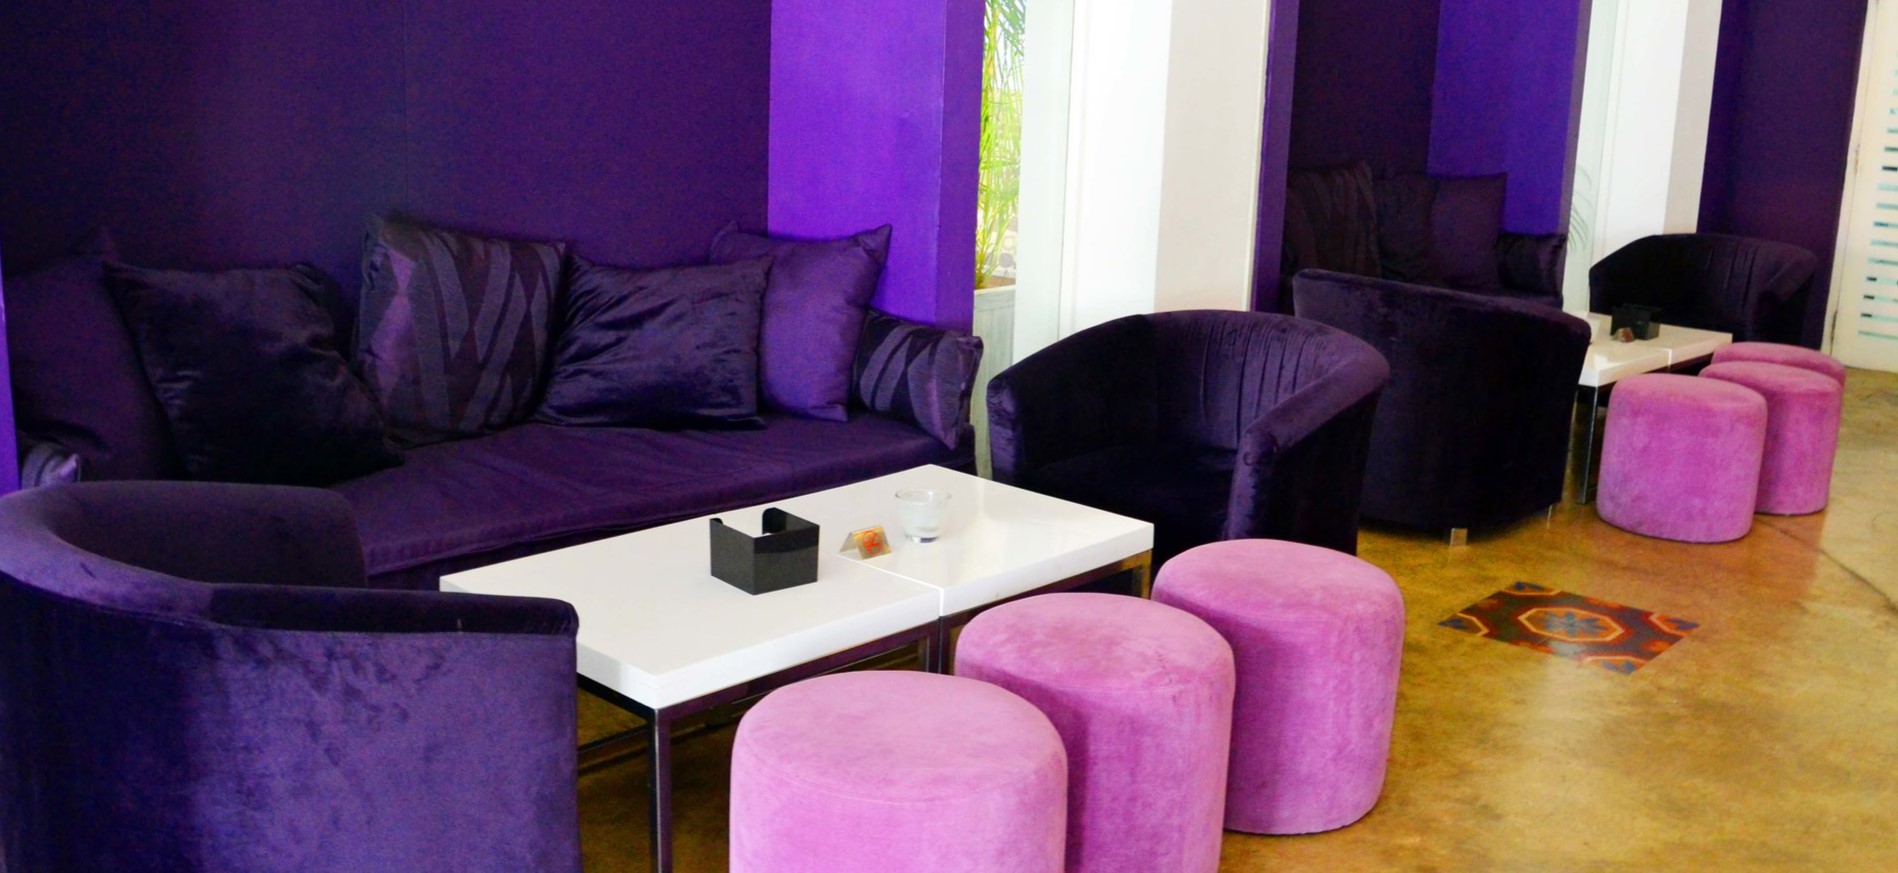 Для декора интерьера можно использовать сиреневые пуфики и фиолетовые диваны